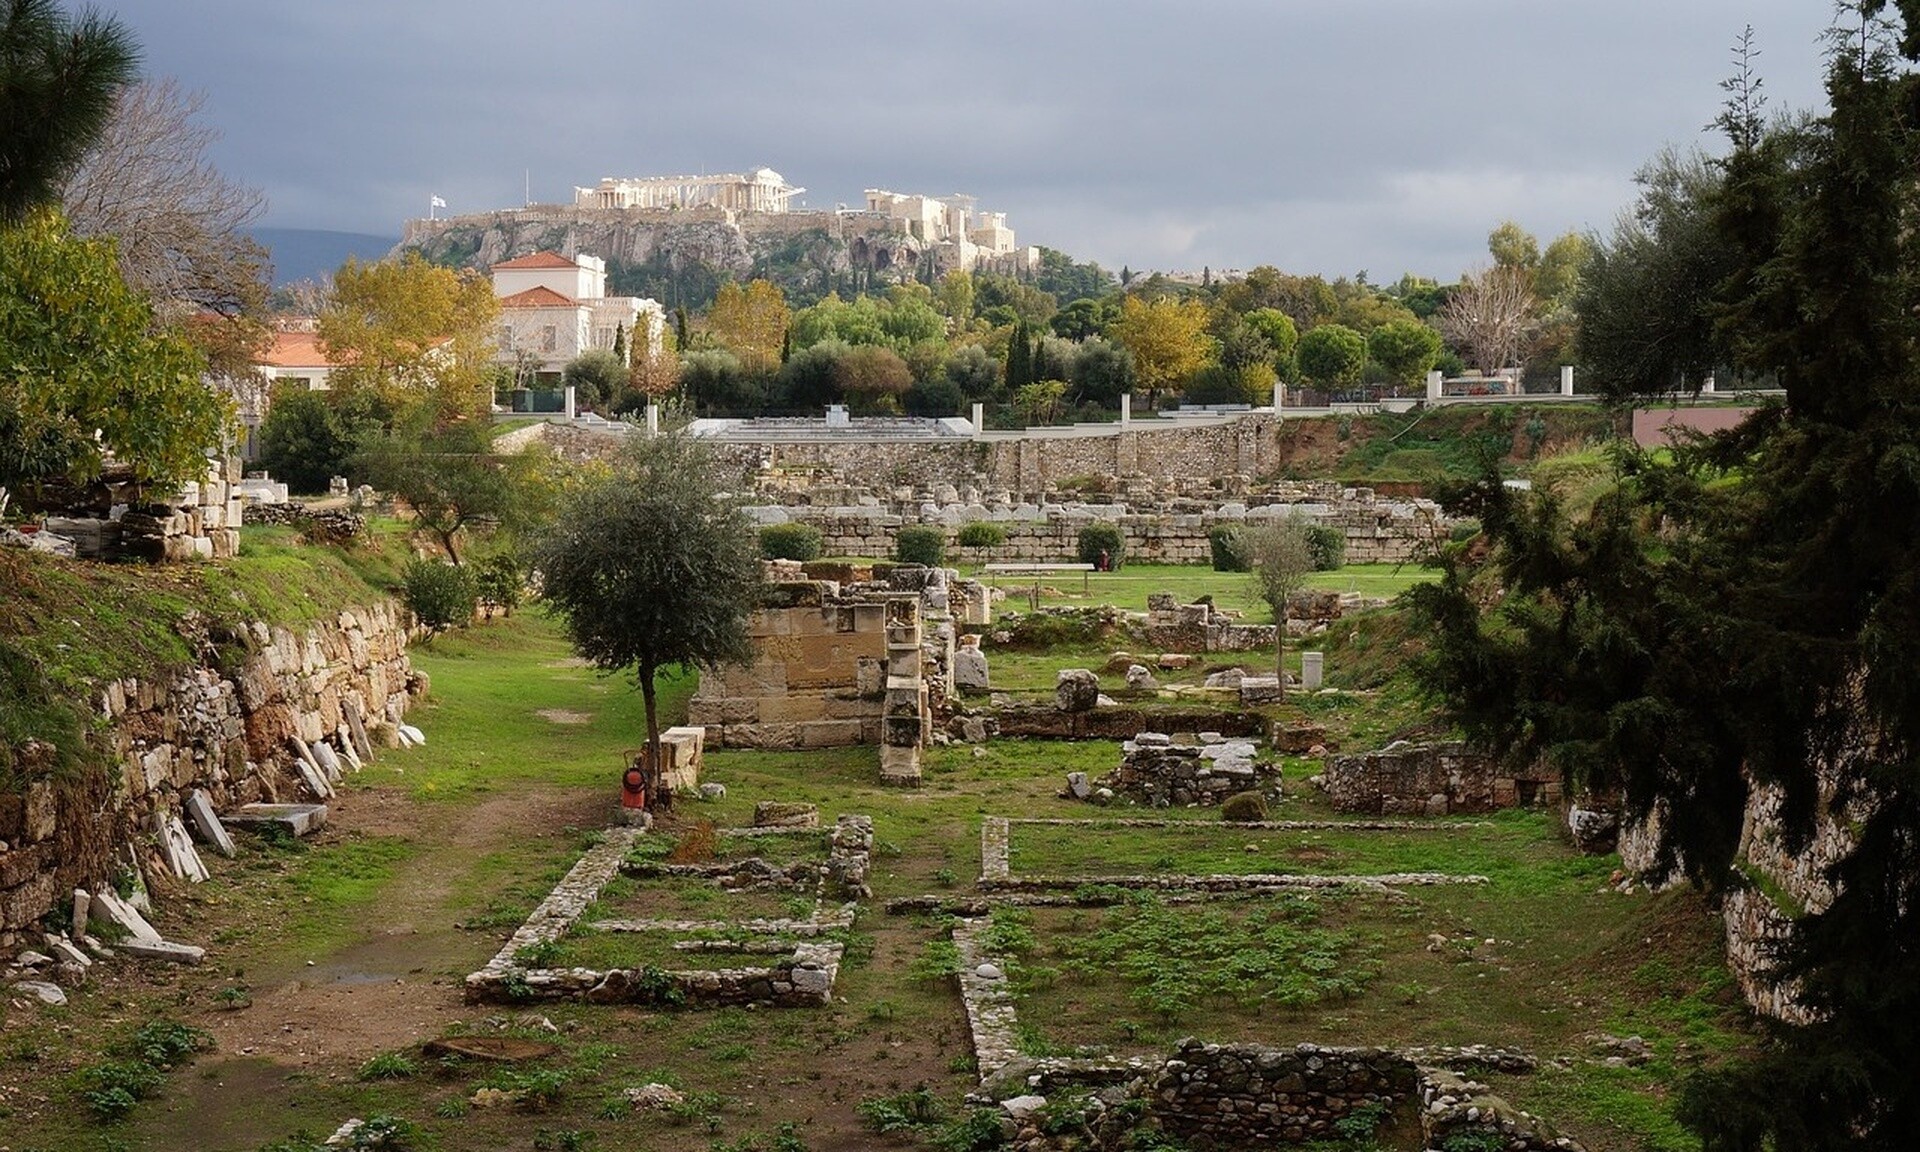 Δωρεάν ξεναγήσεις σε ιστορικά σημεία της Αθήνας - Το πρόγραμμα του Απριλίου